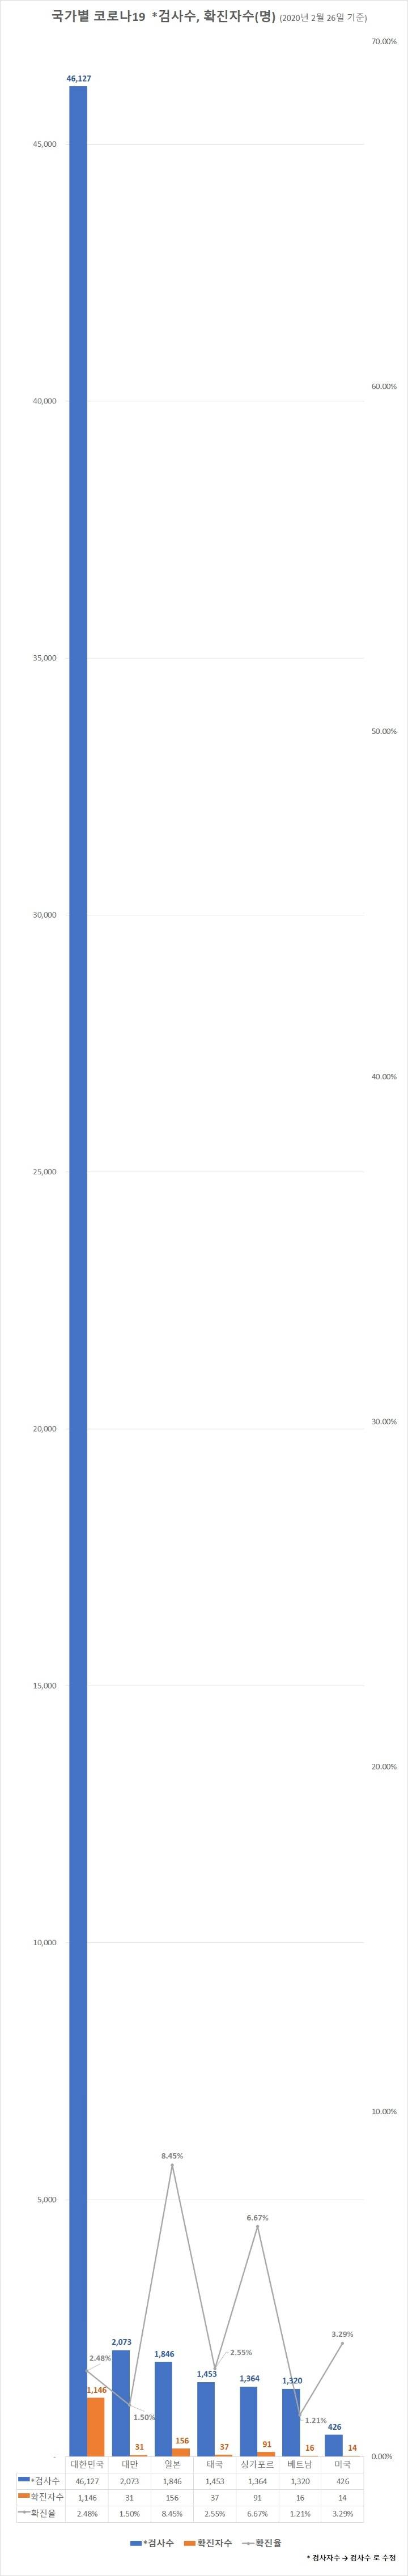 대한민국 현재 검사수 4만6천건 어느정도인지 실감나는 그래프.jpg | 인스티즈